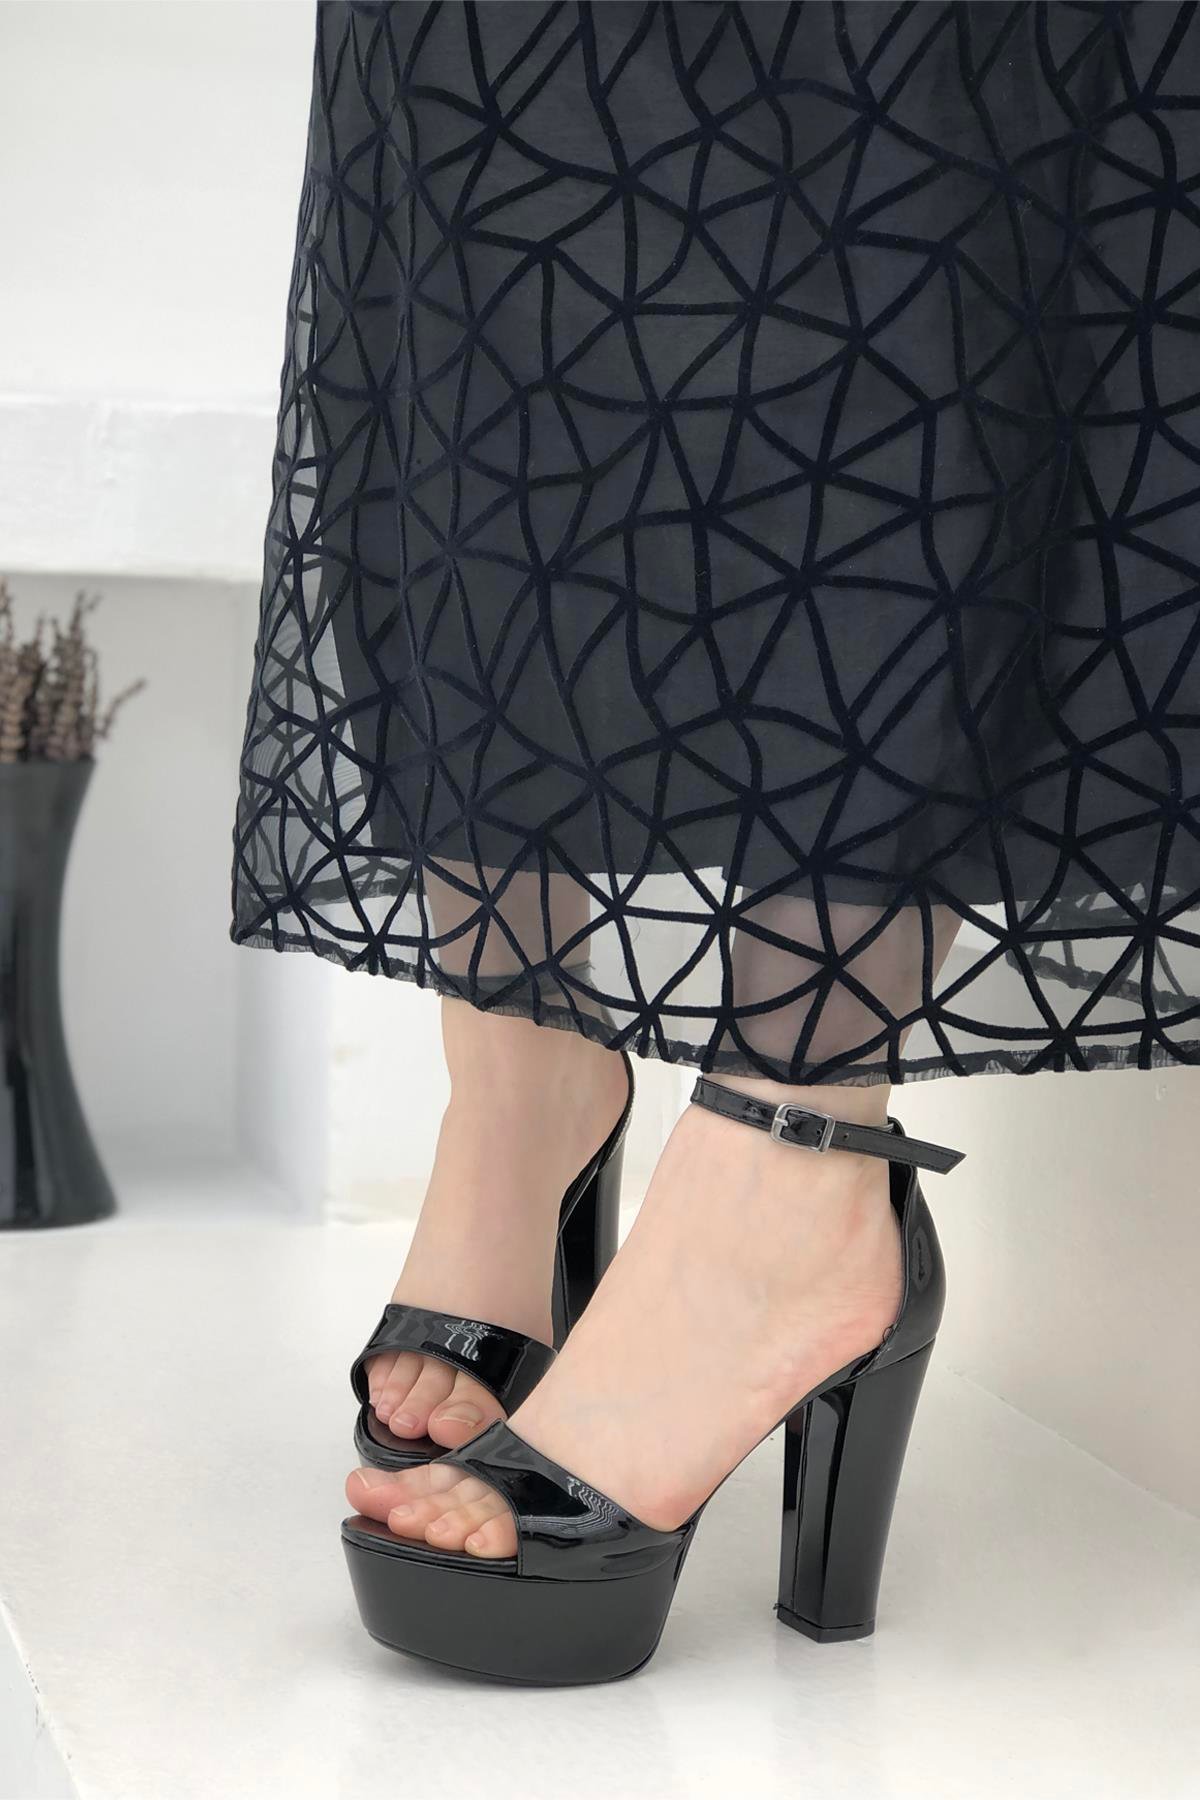 Sade Bilek Bantlı Kadın Platform Ayakkabı Siyah Rugan K-530 Carla Bella |  Mybella Shoes